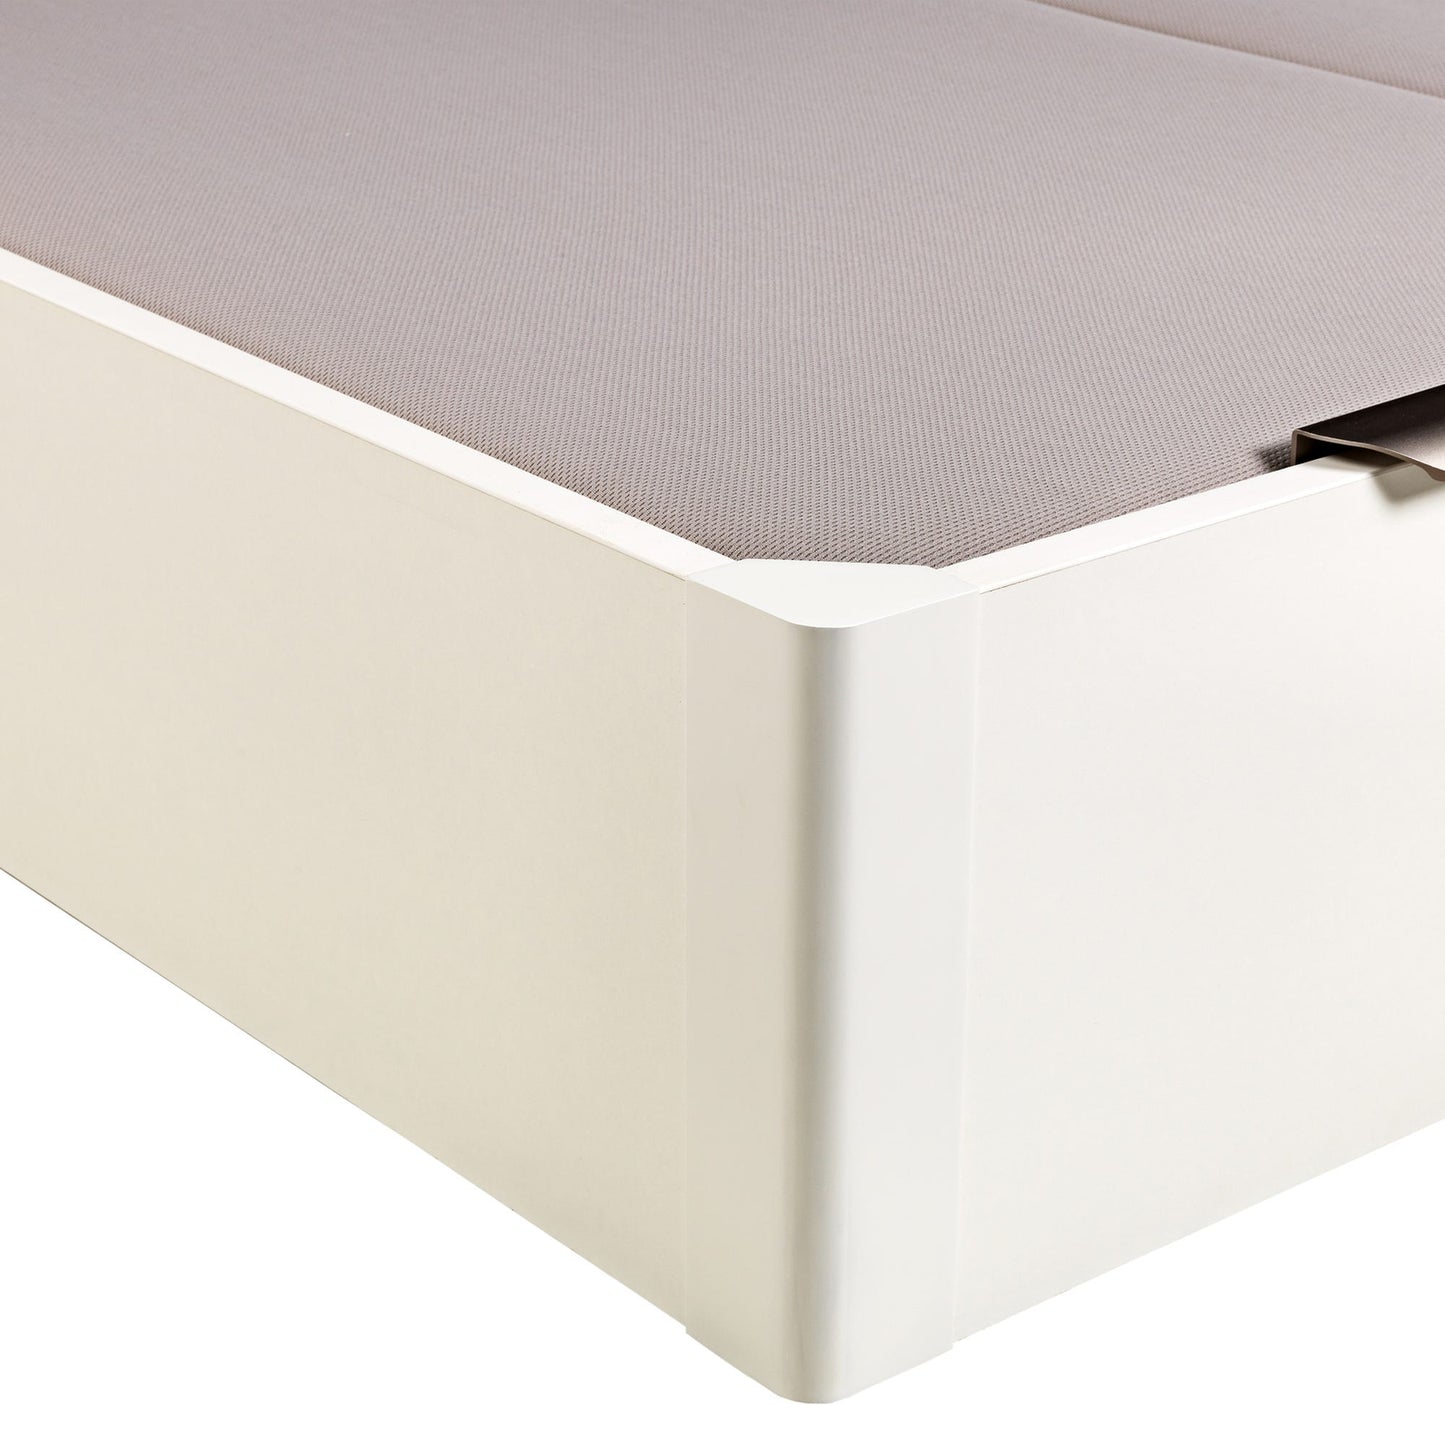 Canapé abatible de madera de tapa doble de color blanco - DESIGN - 160x182